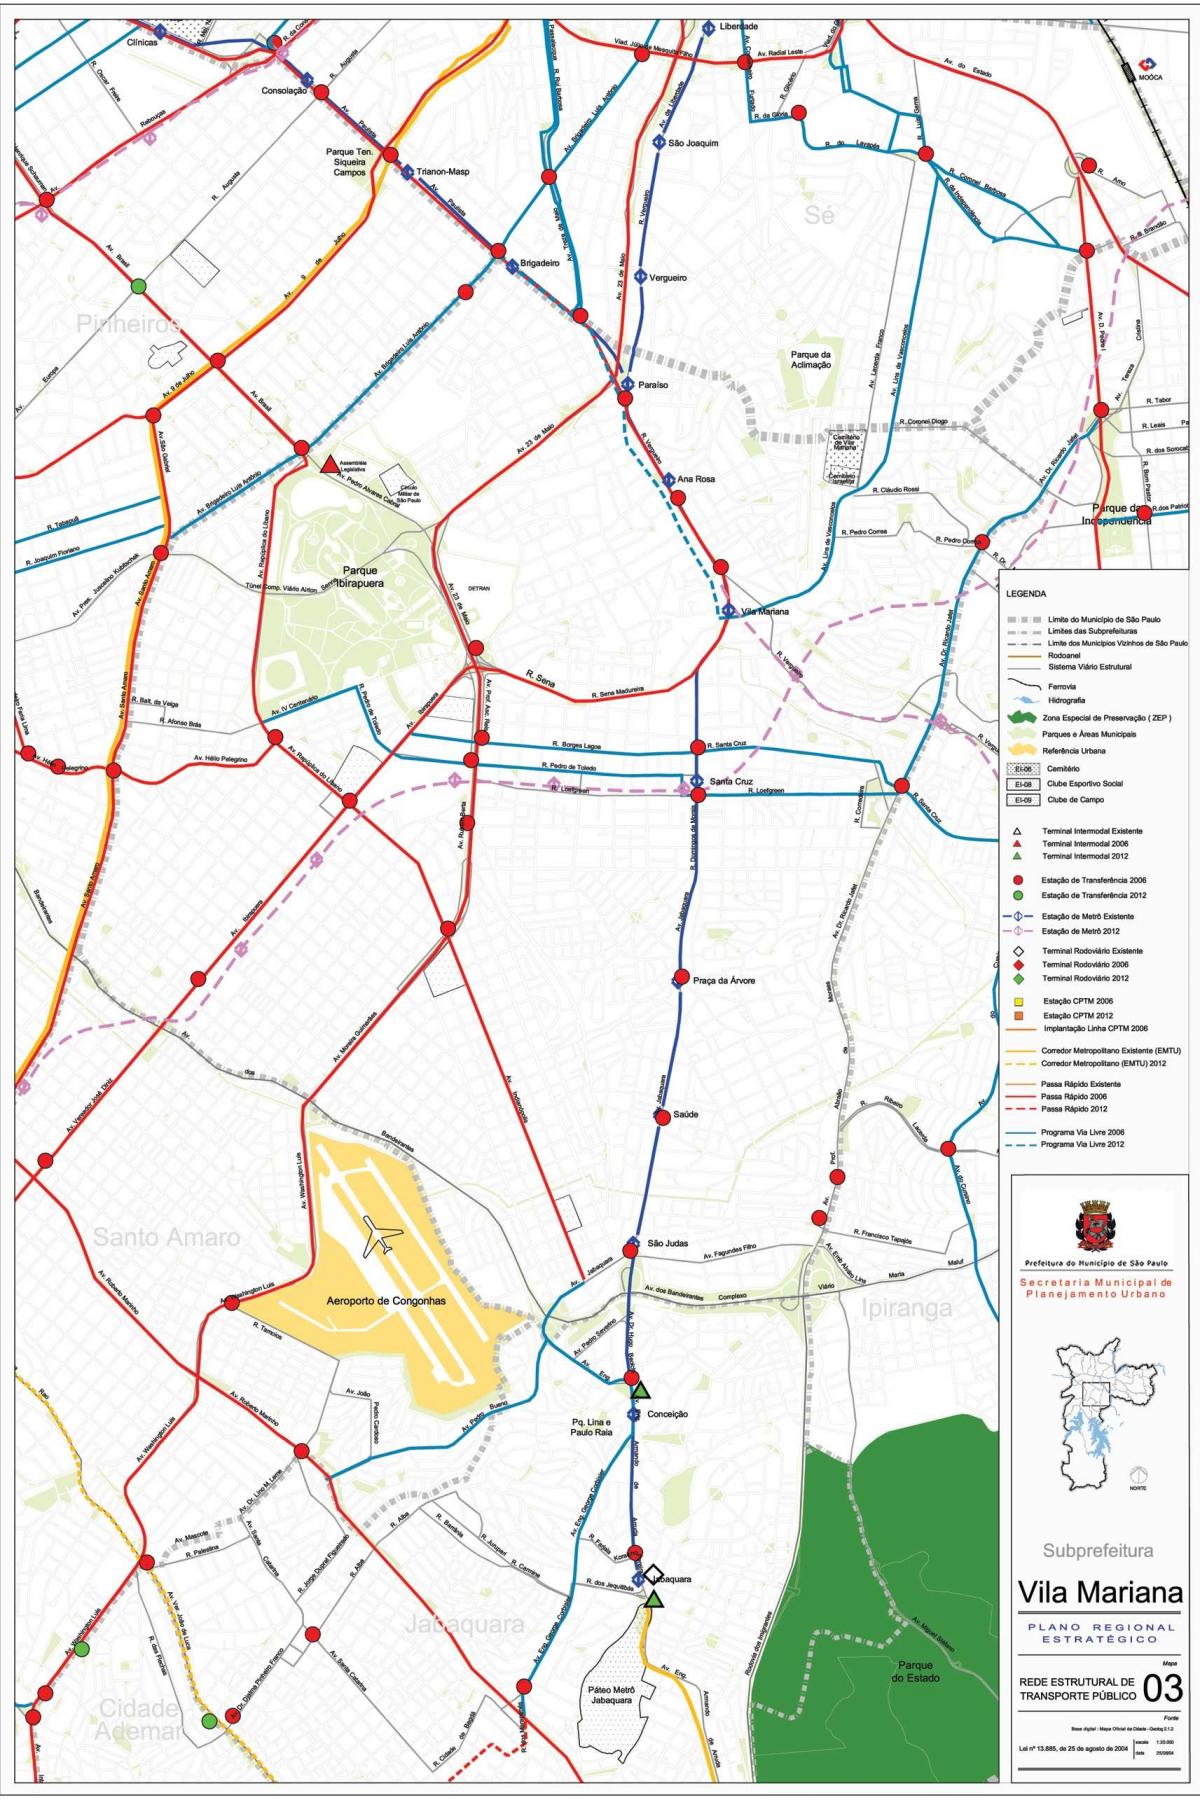 Zemljevid Vila Marianski Sao Paulo - Javni prevozi